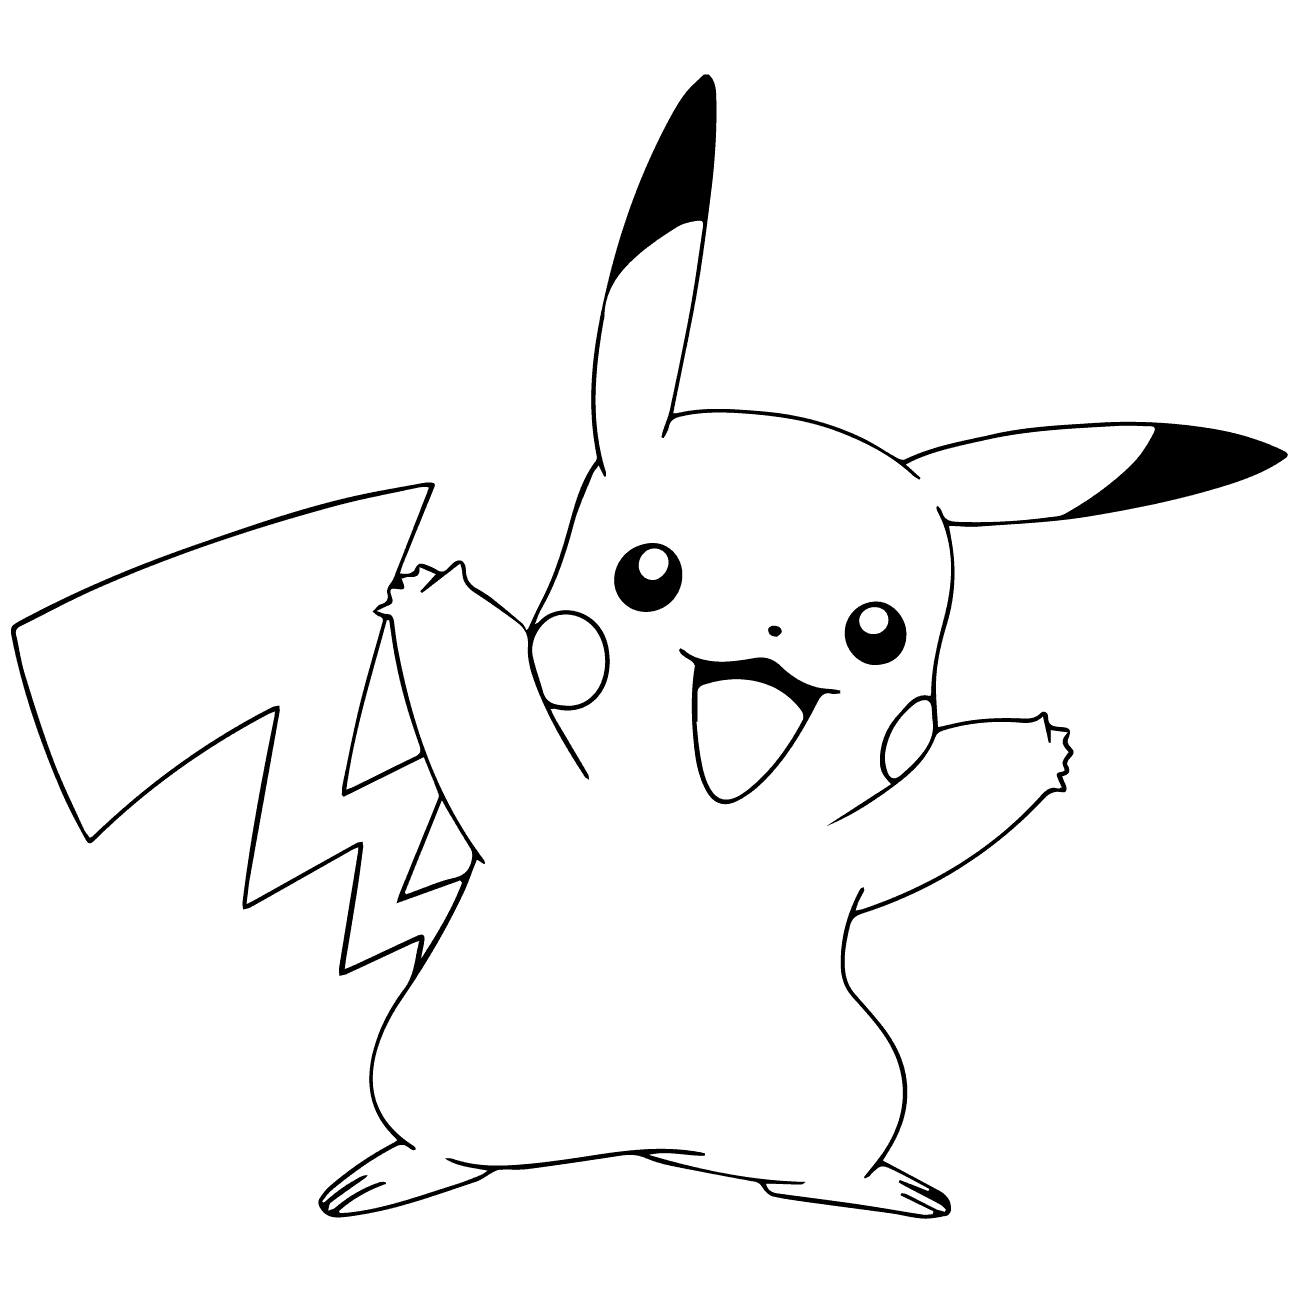 VẼ PIKACHU ϞϞ๑  ๑ BÉ TẬP VẼ  TÔ MÀU VỚI BÚT CHÌ  BÚT LÔNG   MÀU NƯỚC  Draw Pikachu  Pikachu Pokemon Bút chì